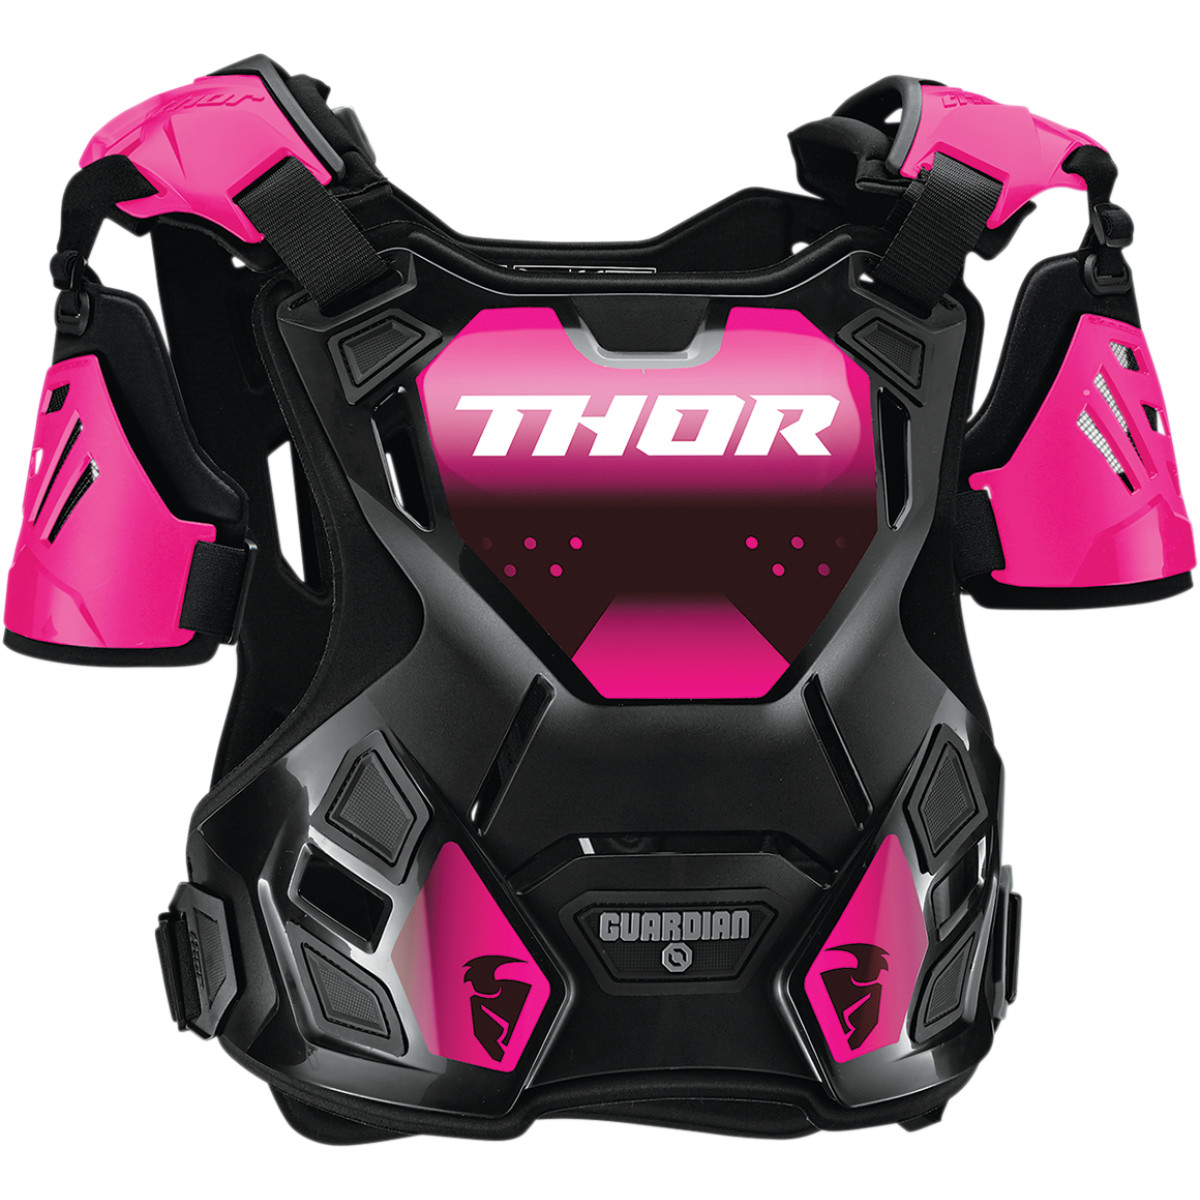 Protectie Corp Dame Thor Guardian Culoare Negru/roz Marime M/l